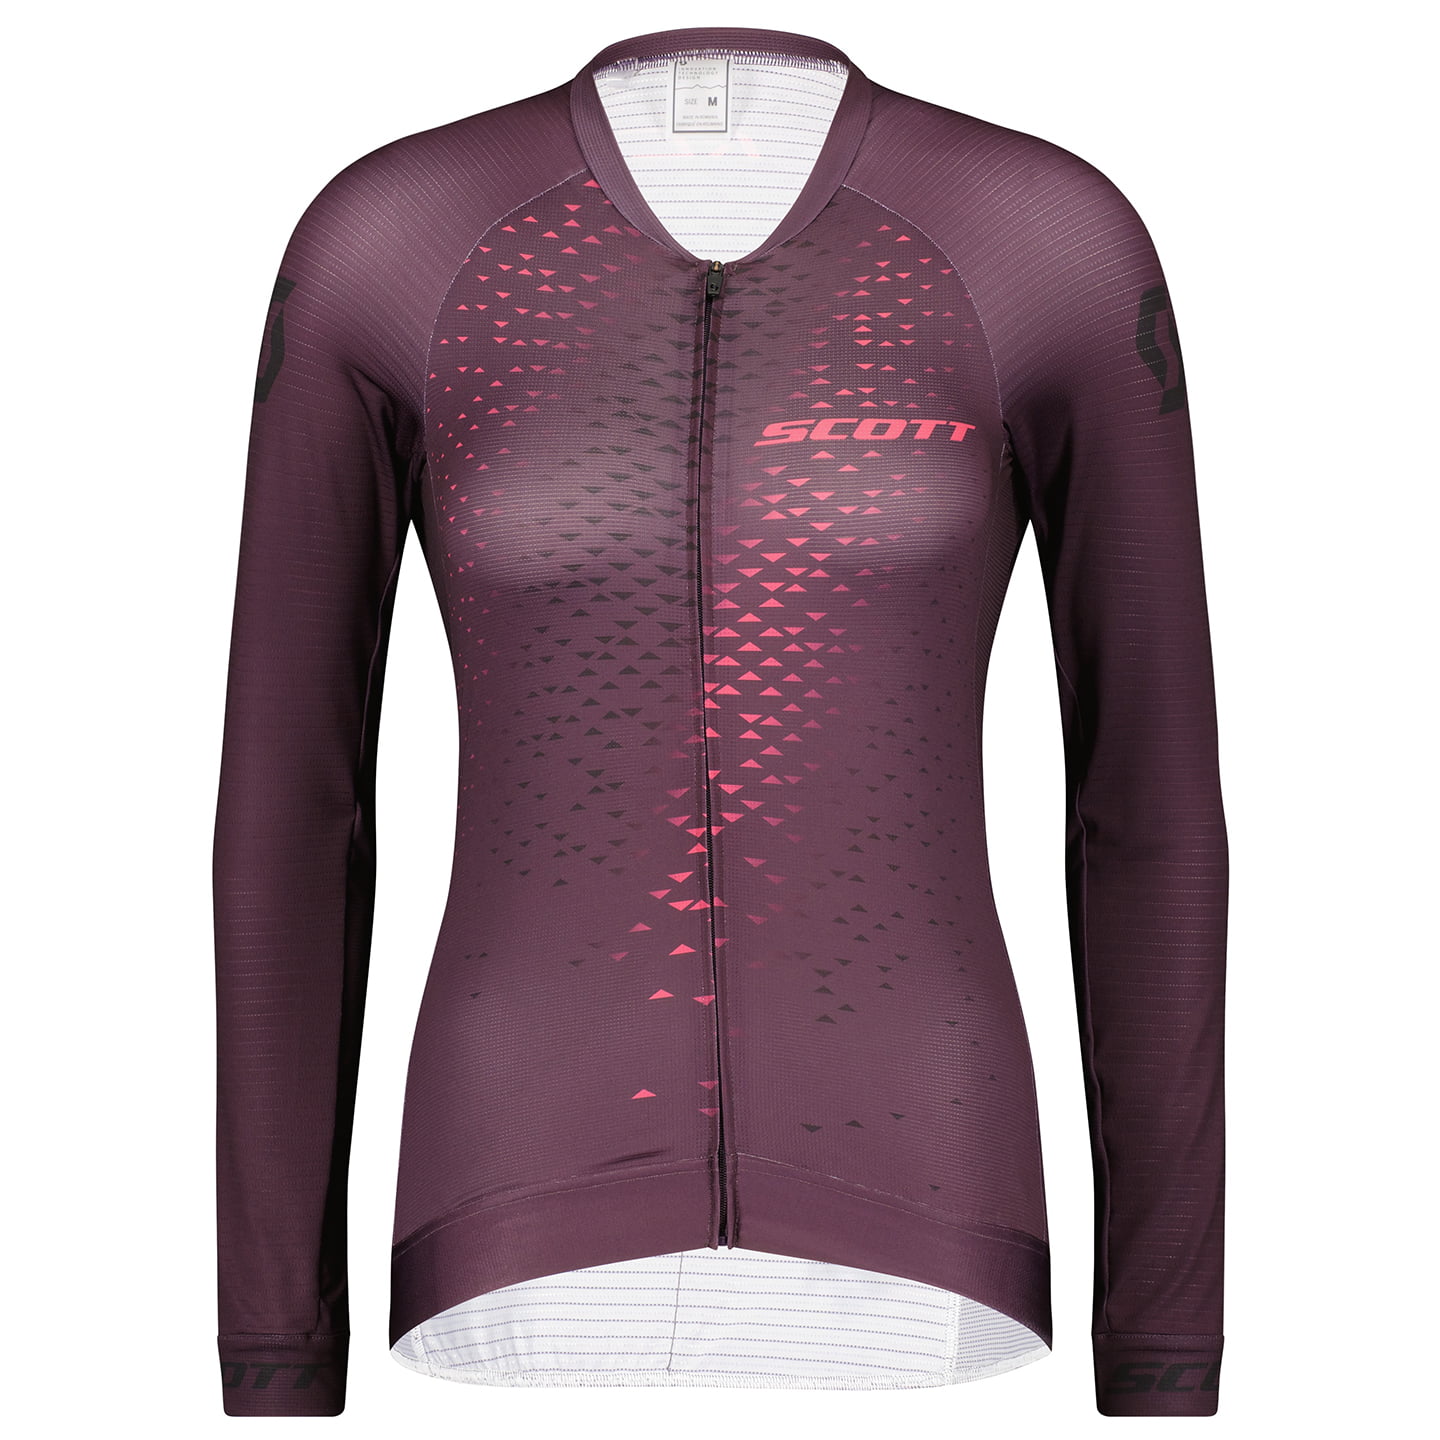 SCOTT RC Pro Women’s Long Sleeve Jersey Women’s Long Sleeve Jersey, size S, Cycling jersey, Cycle gear